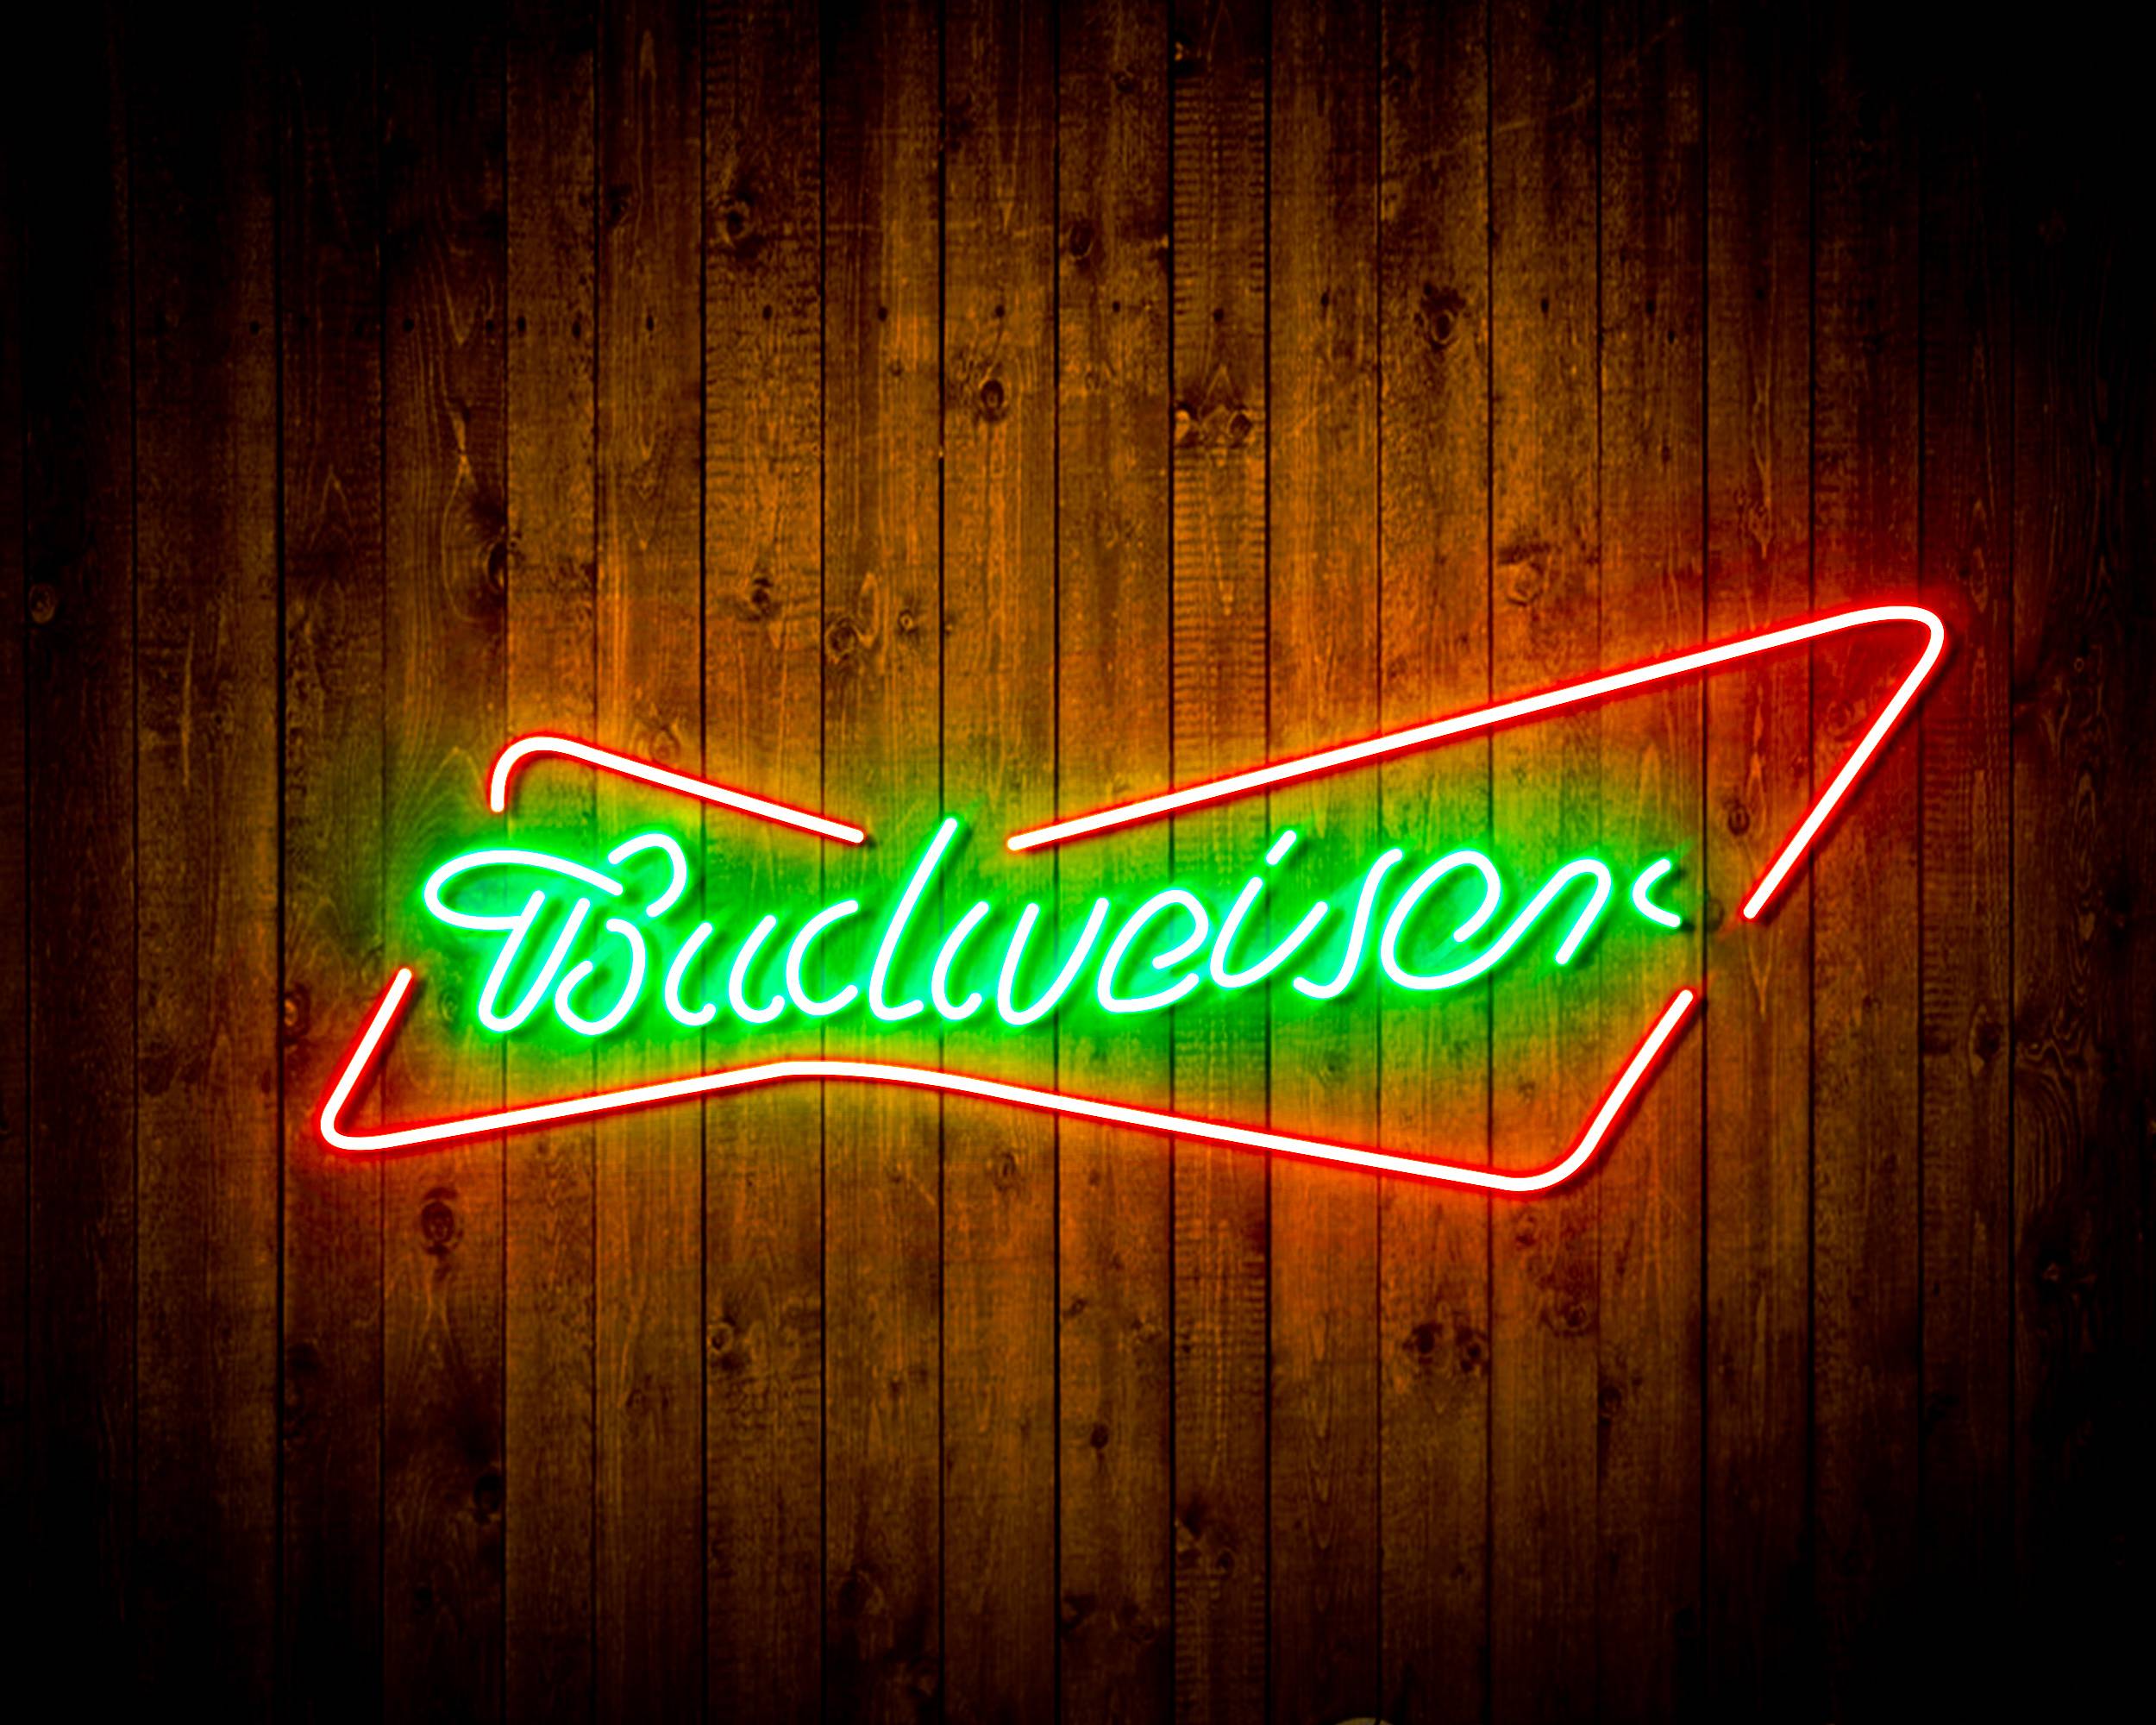 Budweiser 2 Handmade LED Neon Light Sign